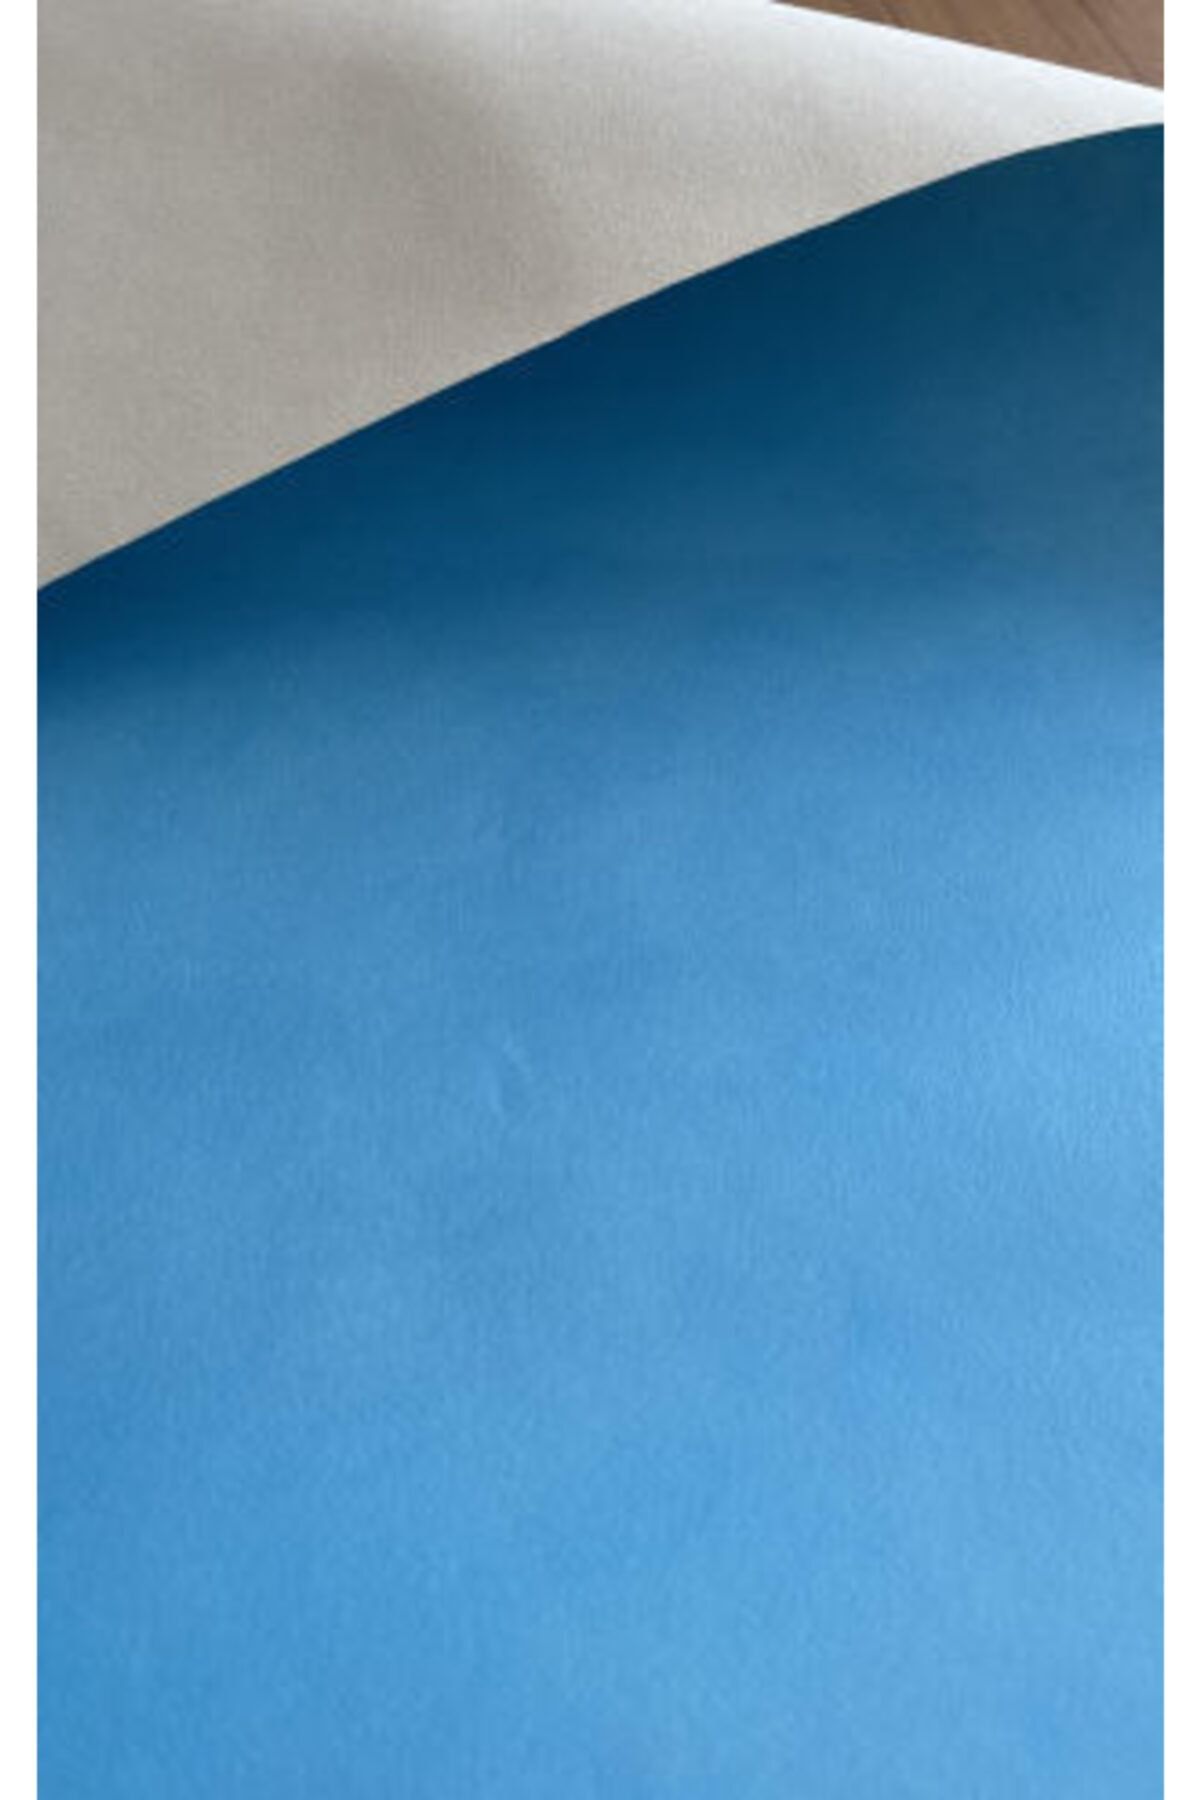 BAŞYAPI DİZAYN Bulut Mavisi Kendinden Desenli Duvar Kağıdı (5M²)